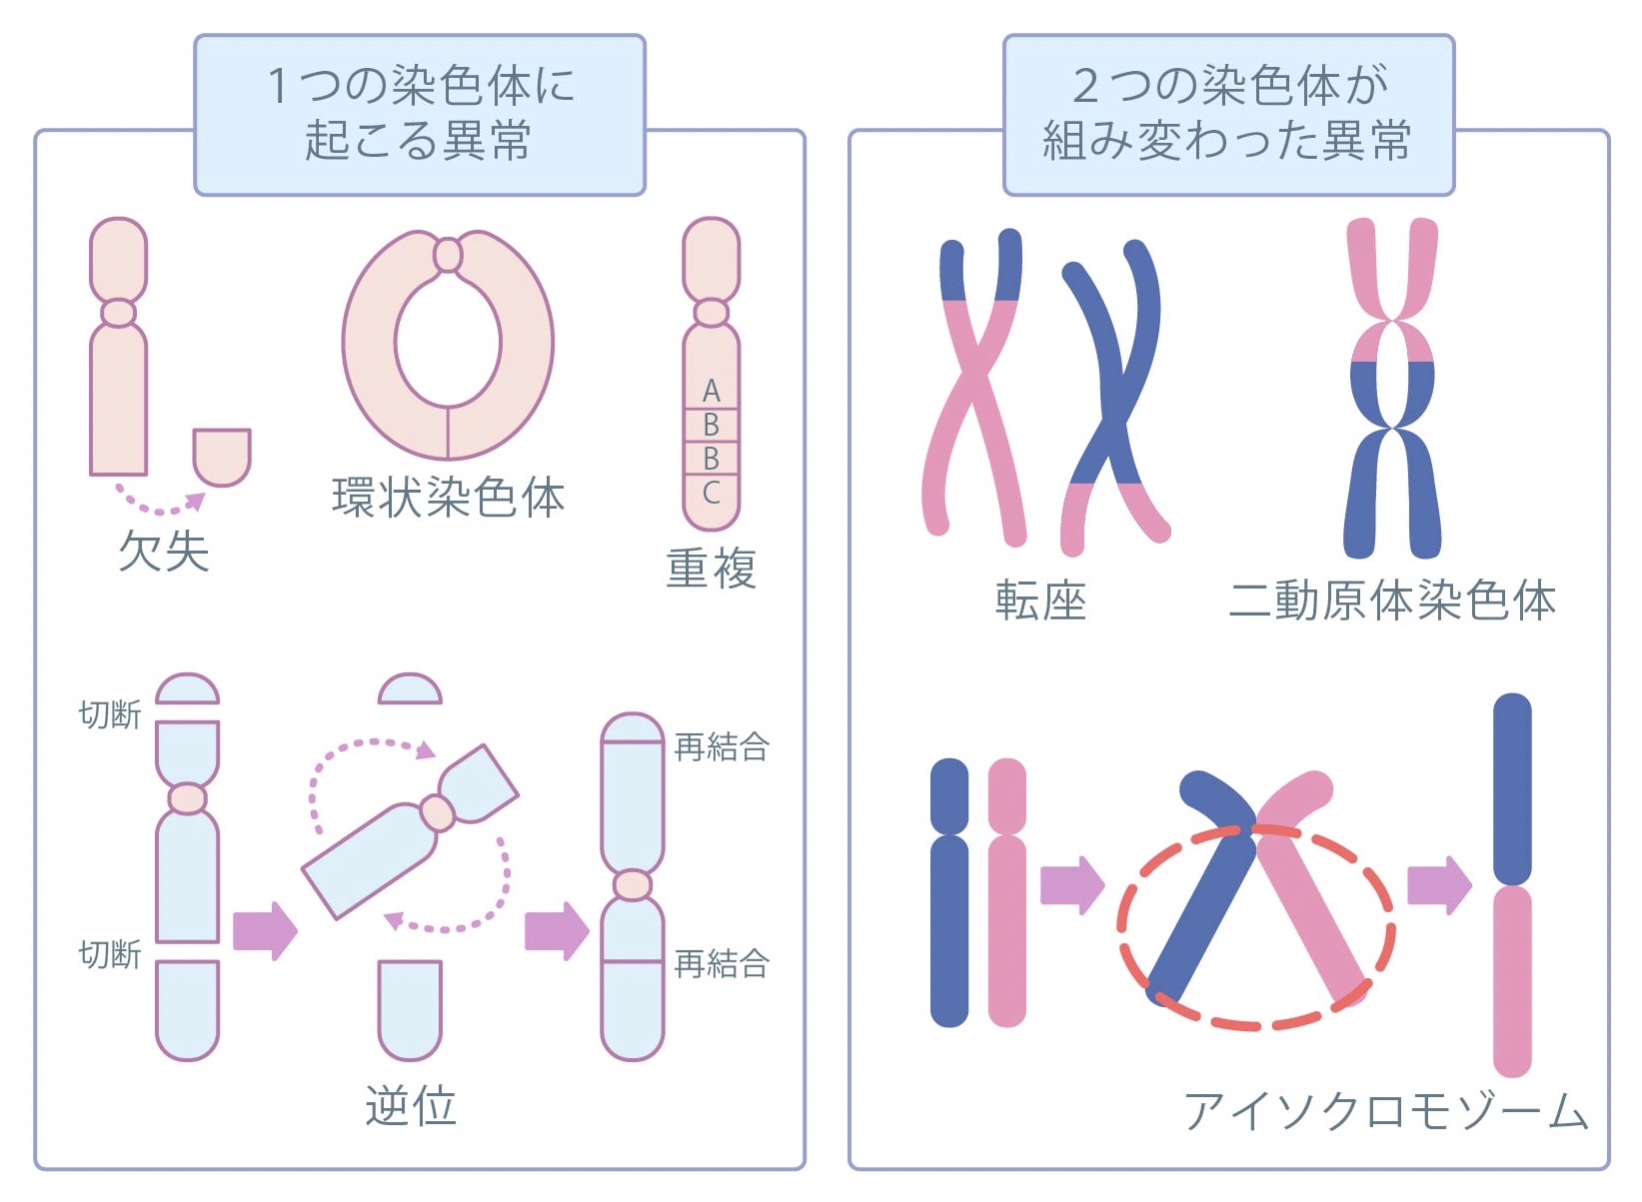 染色体の構造の異常